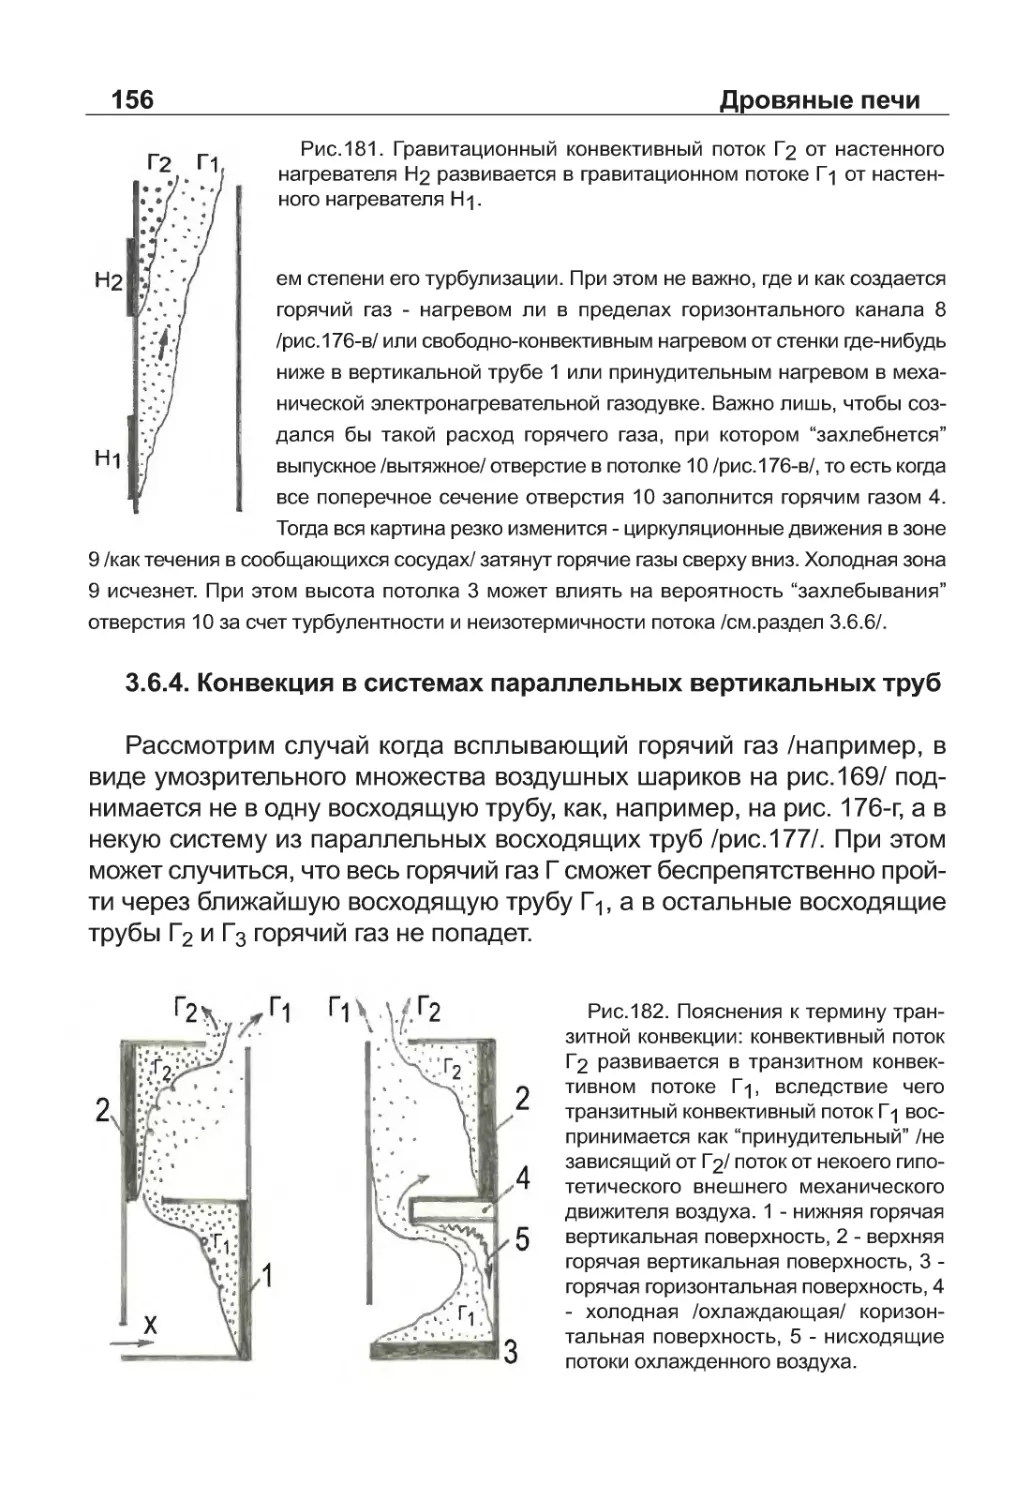 3.6.4. Конвекция в системах параллельных вертикальных труб
Рис. 181
Рис. 182